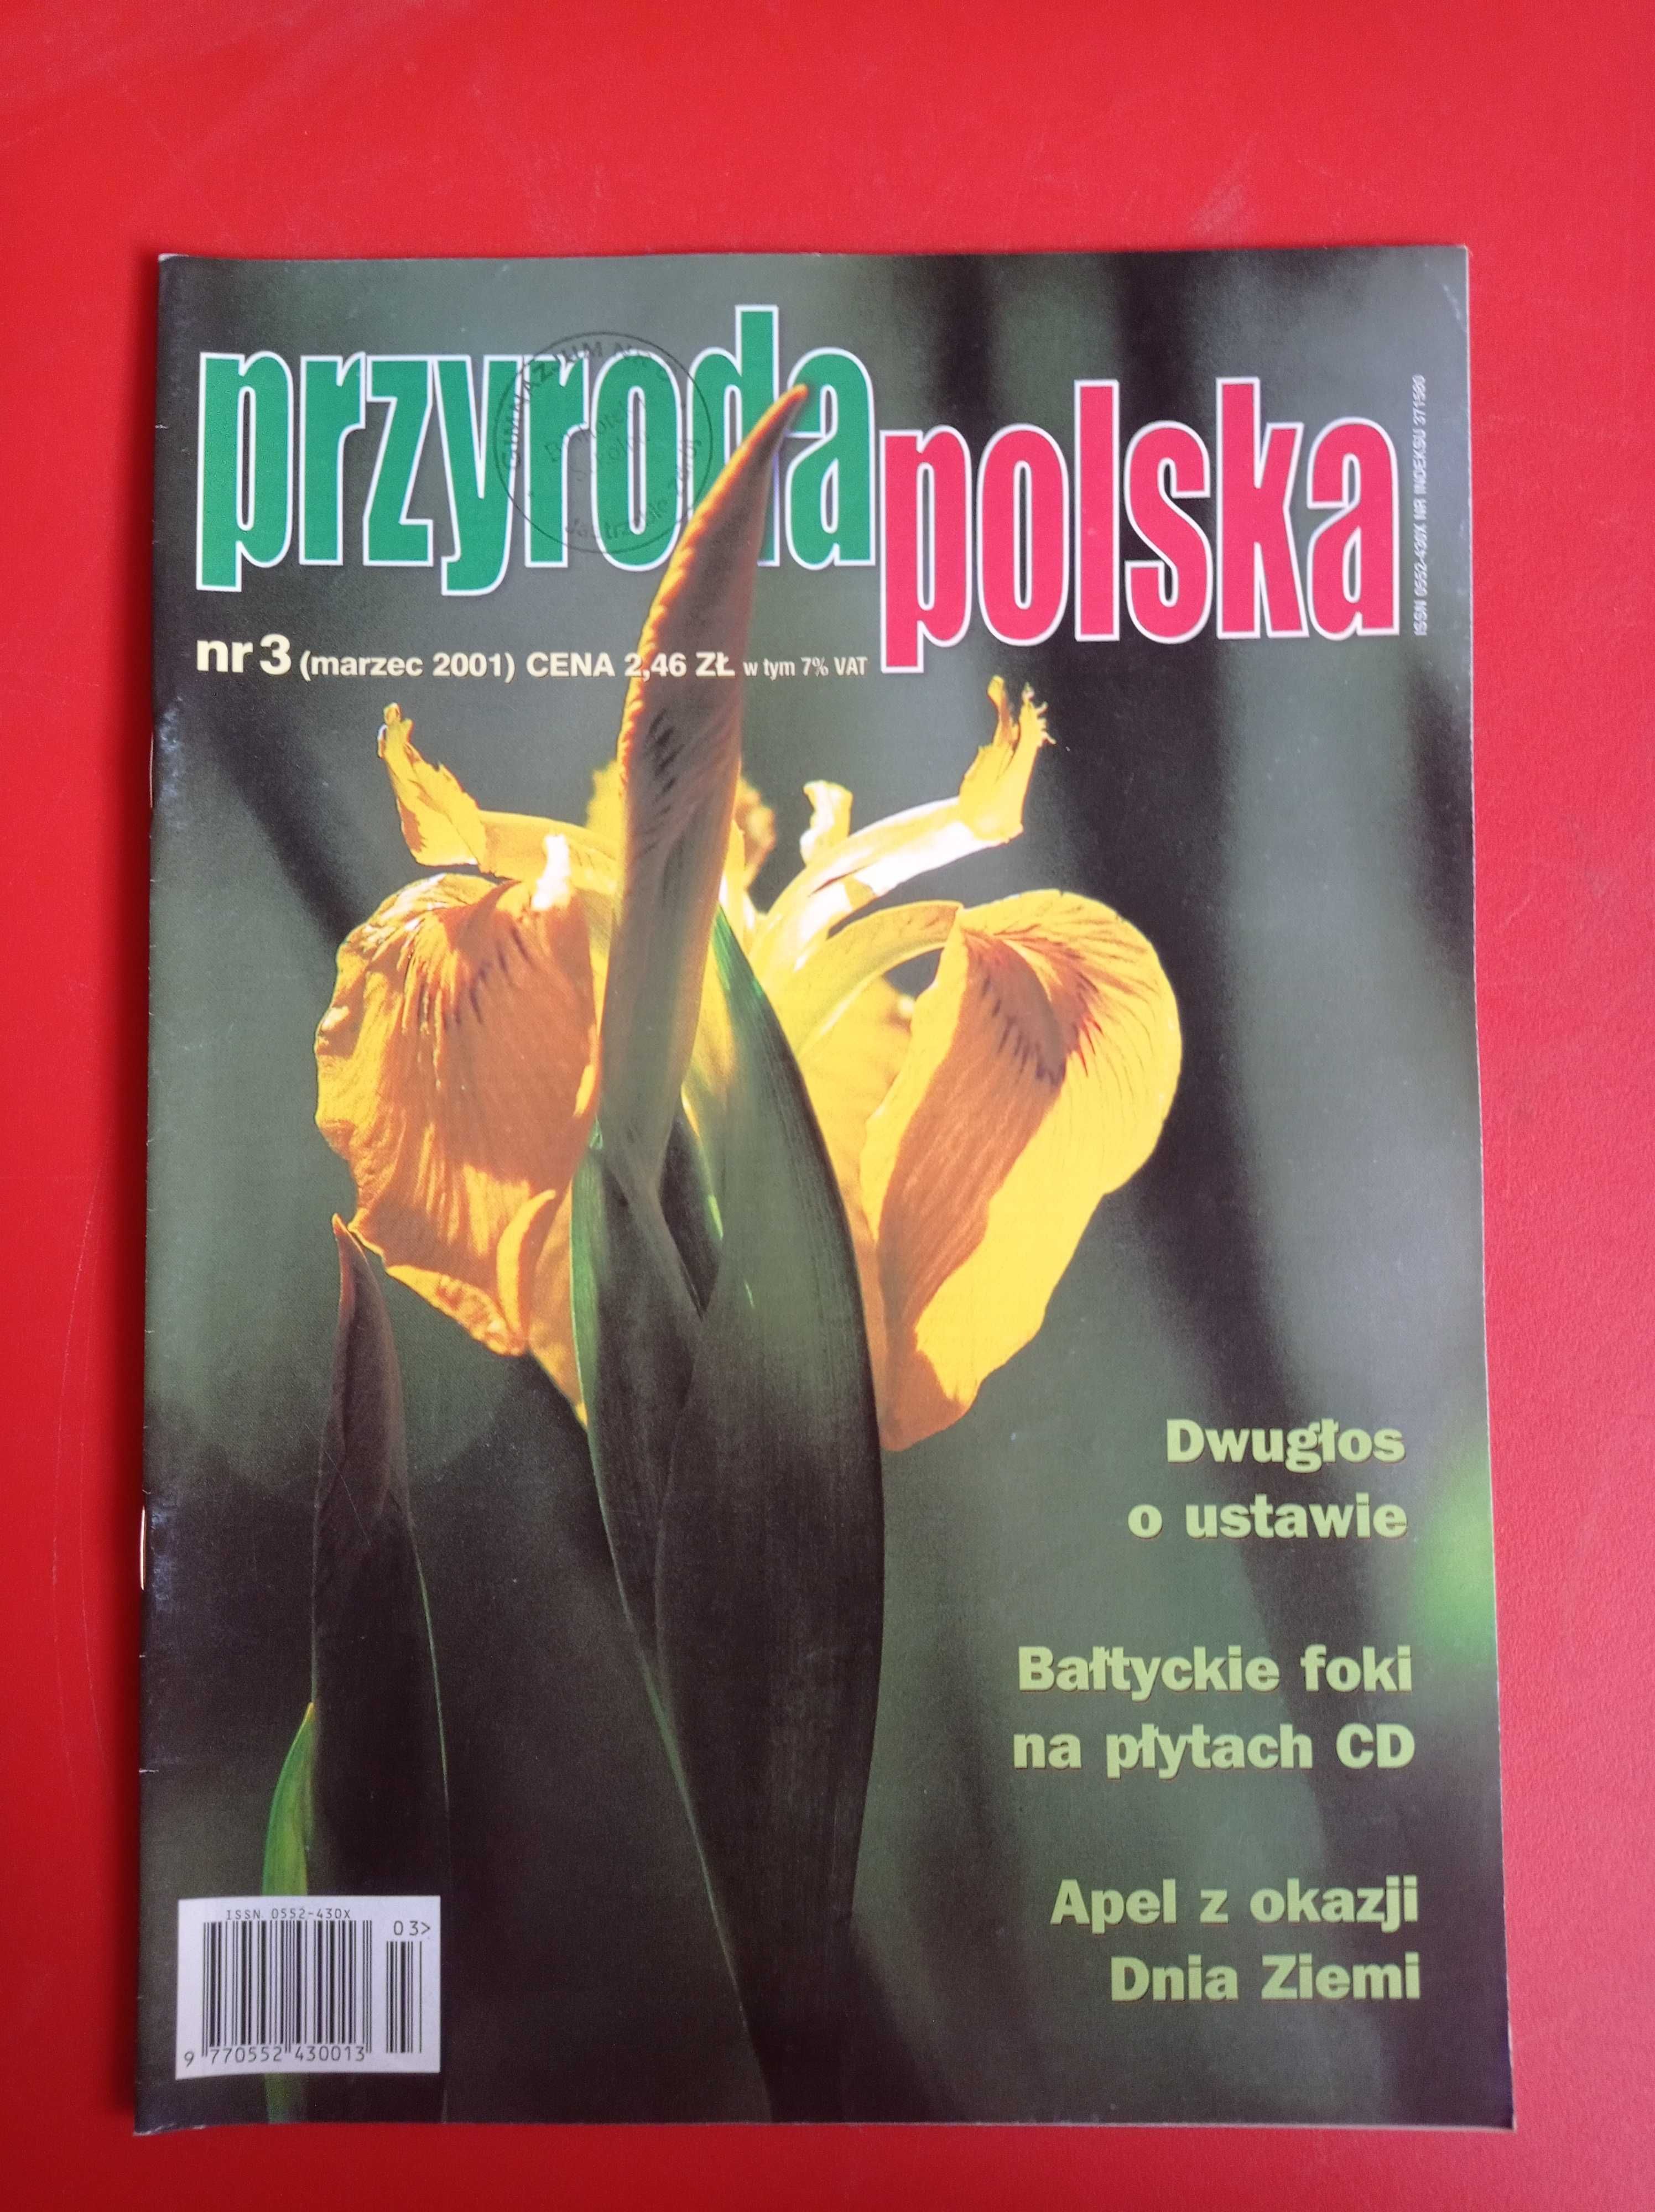 Przyroda polska nr 3/2001, marzec 2001